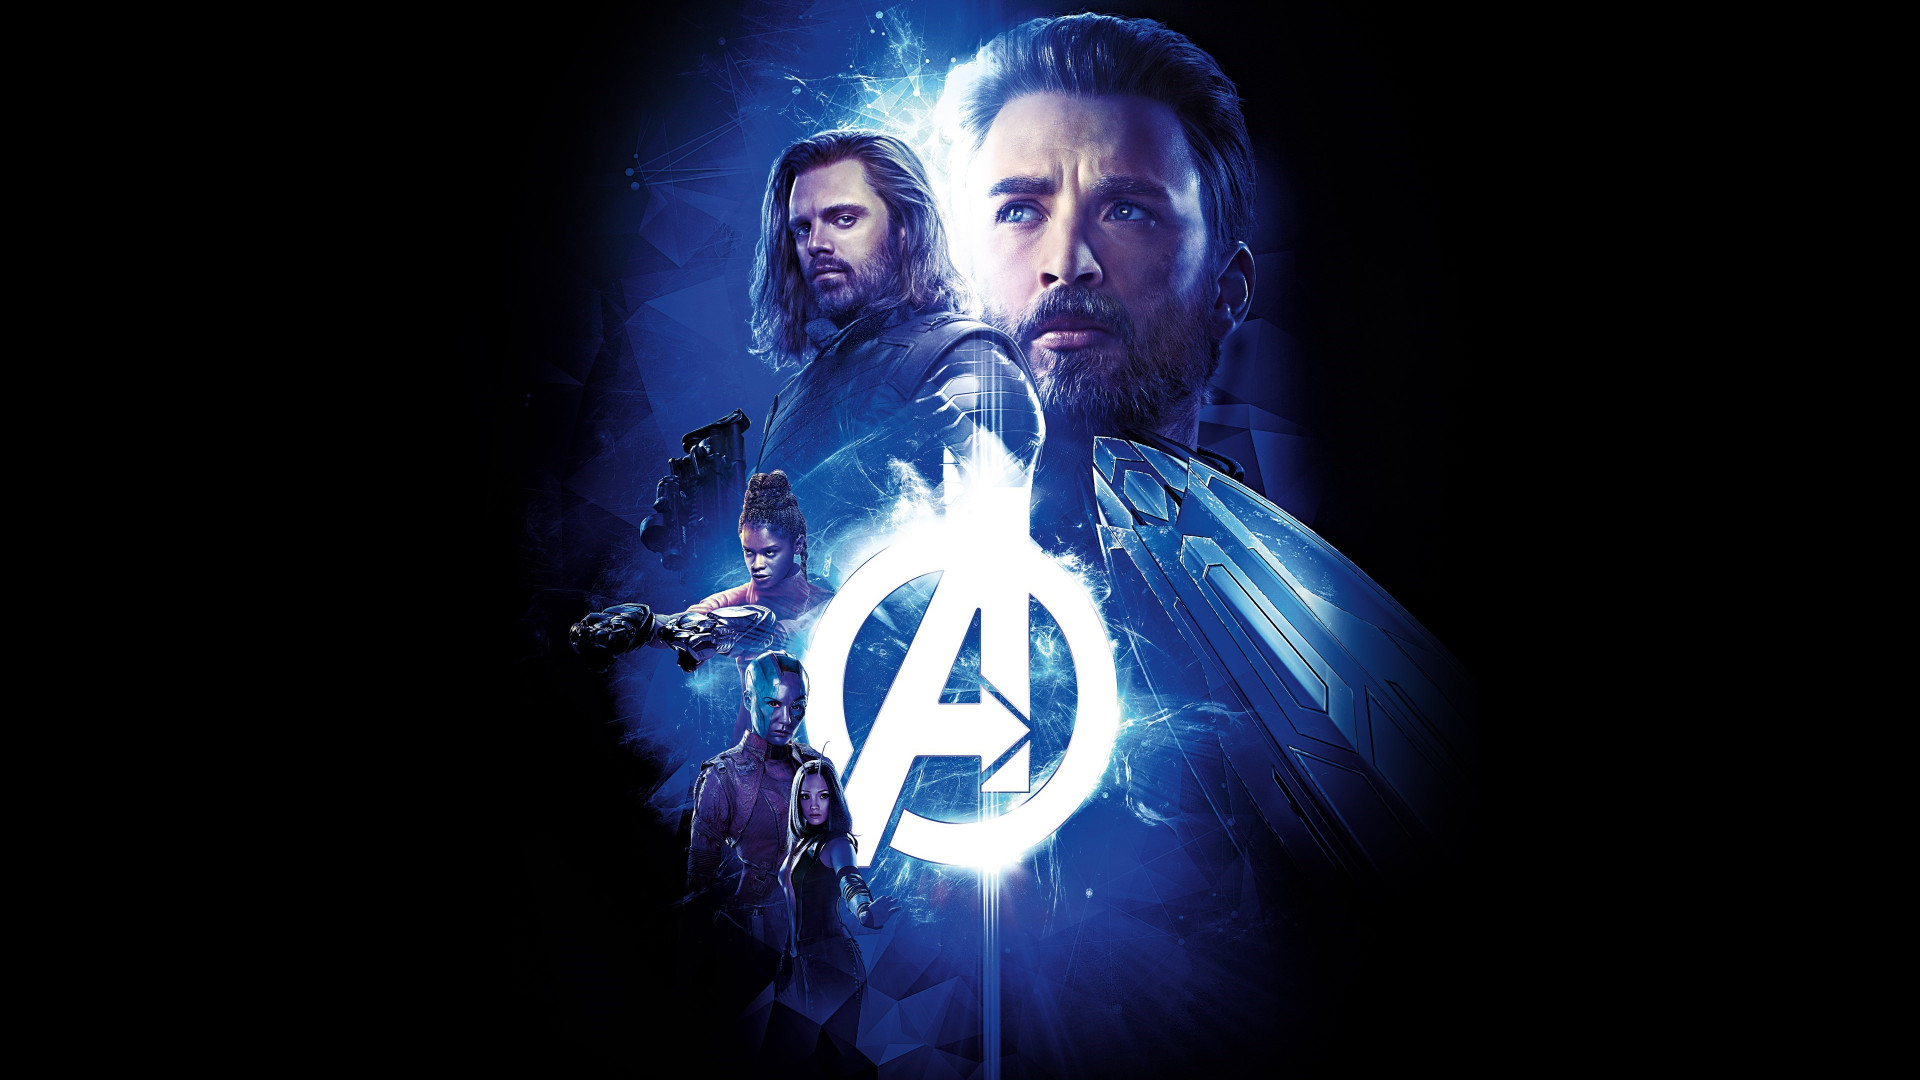 Avengers: Infinity War wallpaper 1920x1080